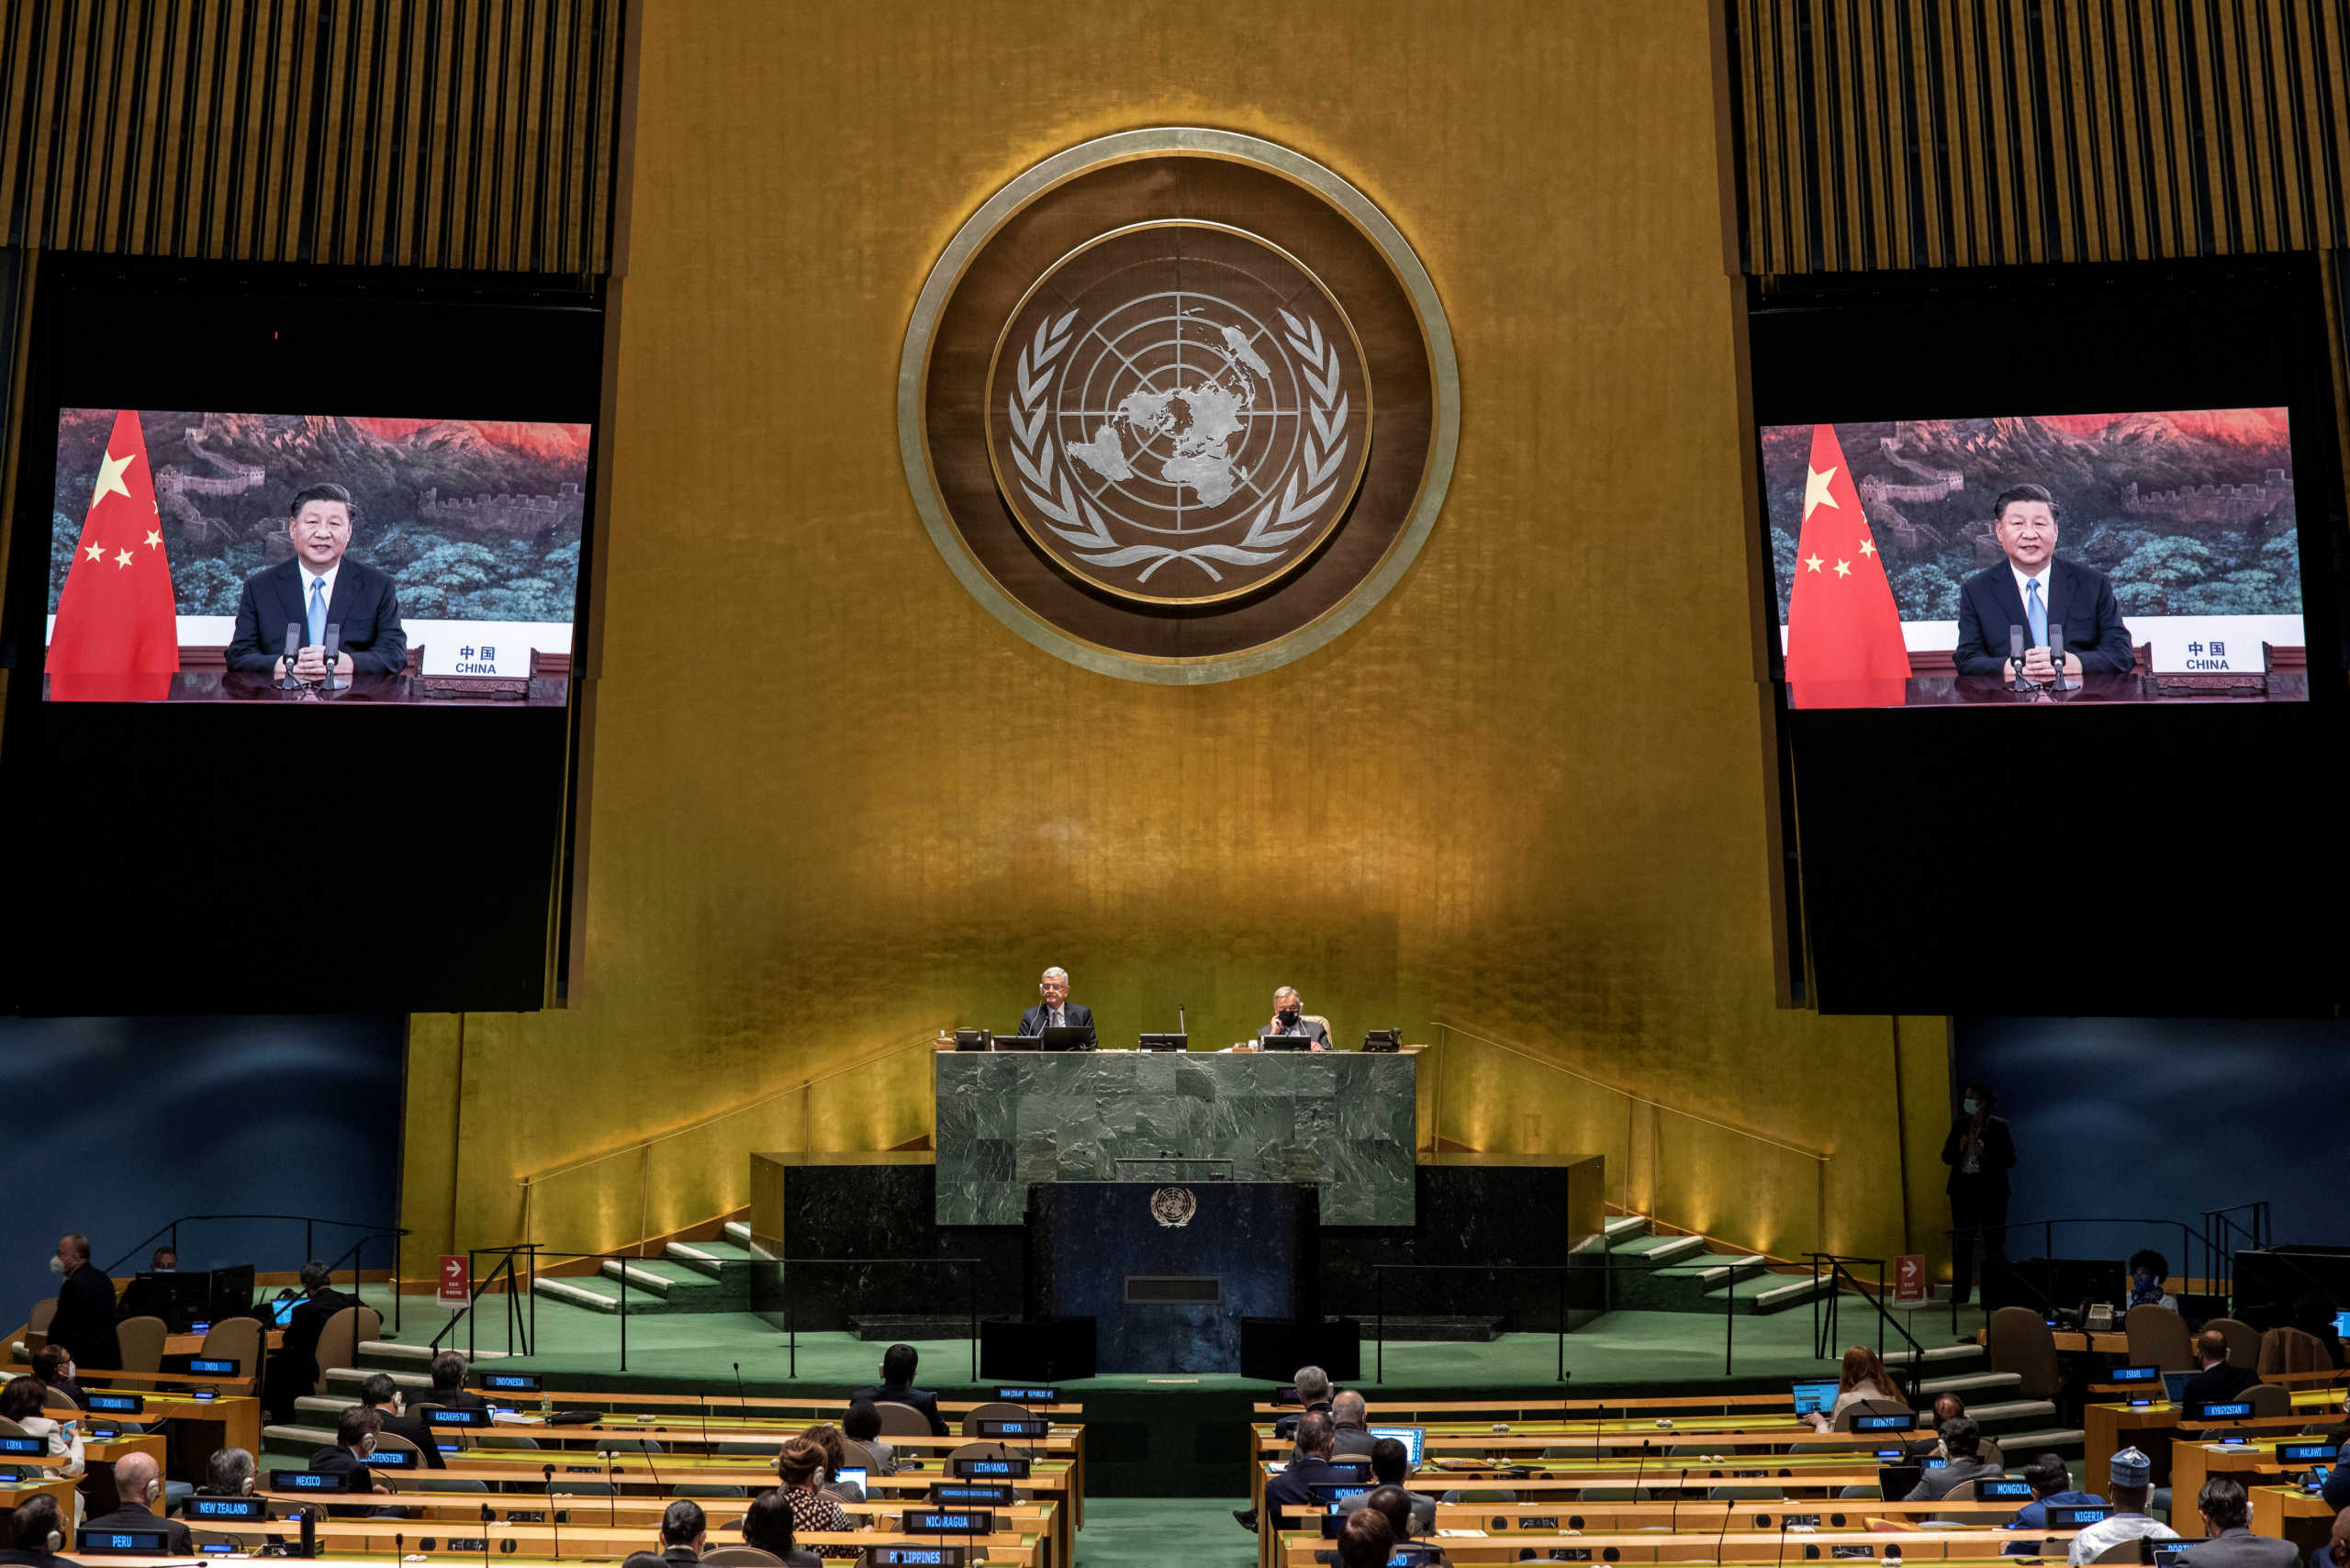 ΟΗΕ: Ακυρώθηκαν οι σύνοδοι με φυσική παρουσία μετά από πέντε κρούσματα  κορονοϊού